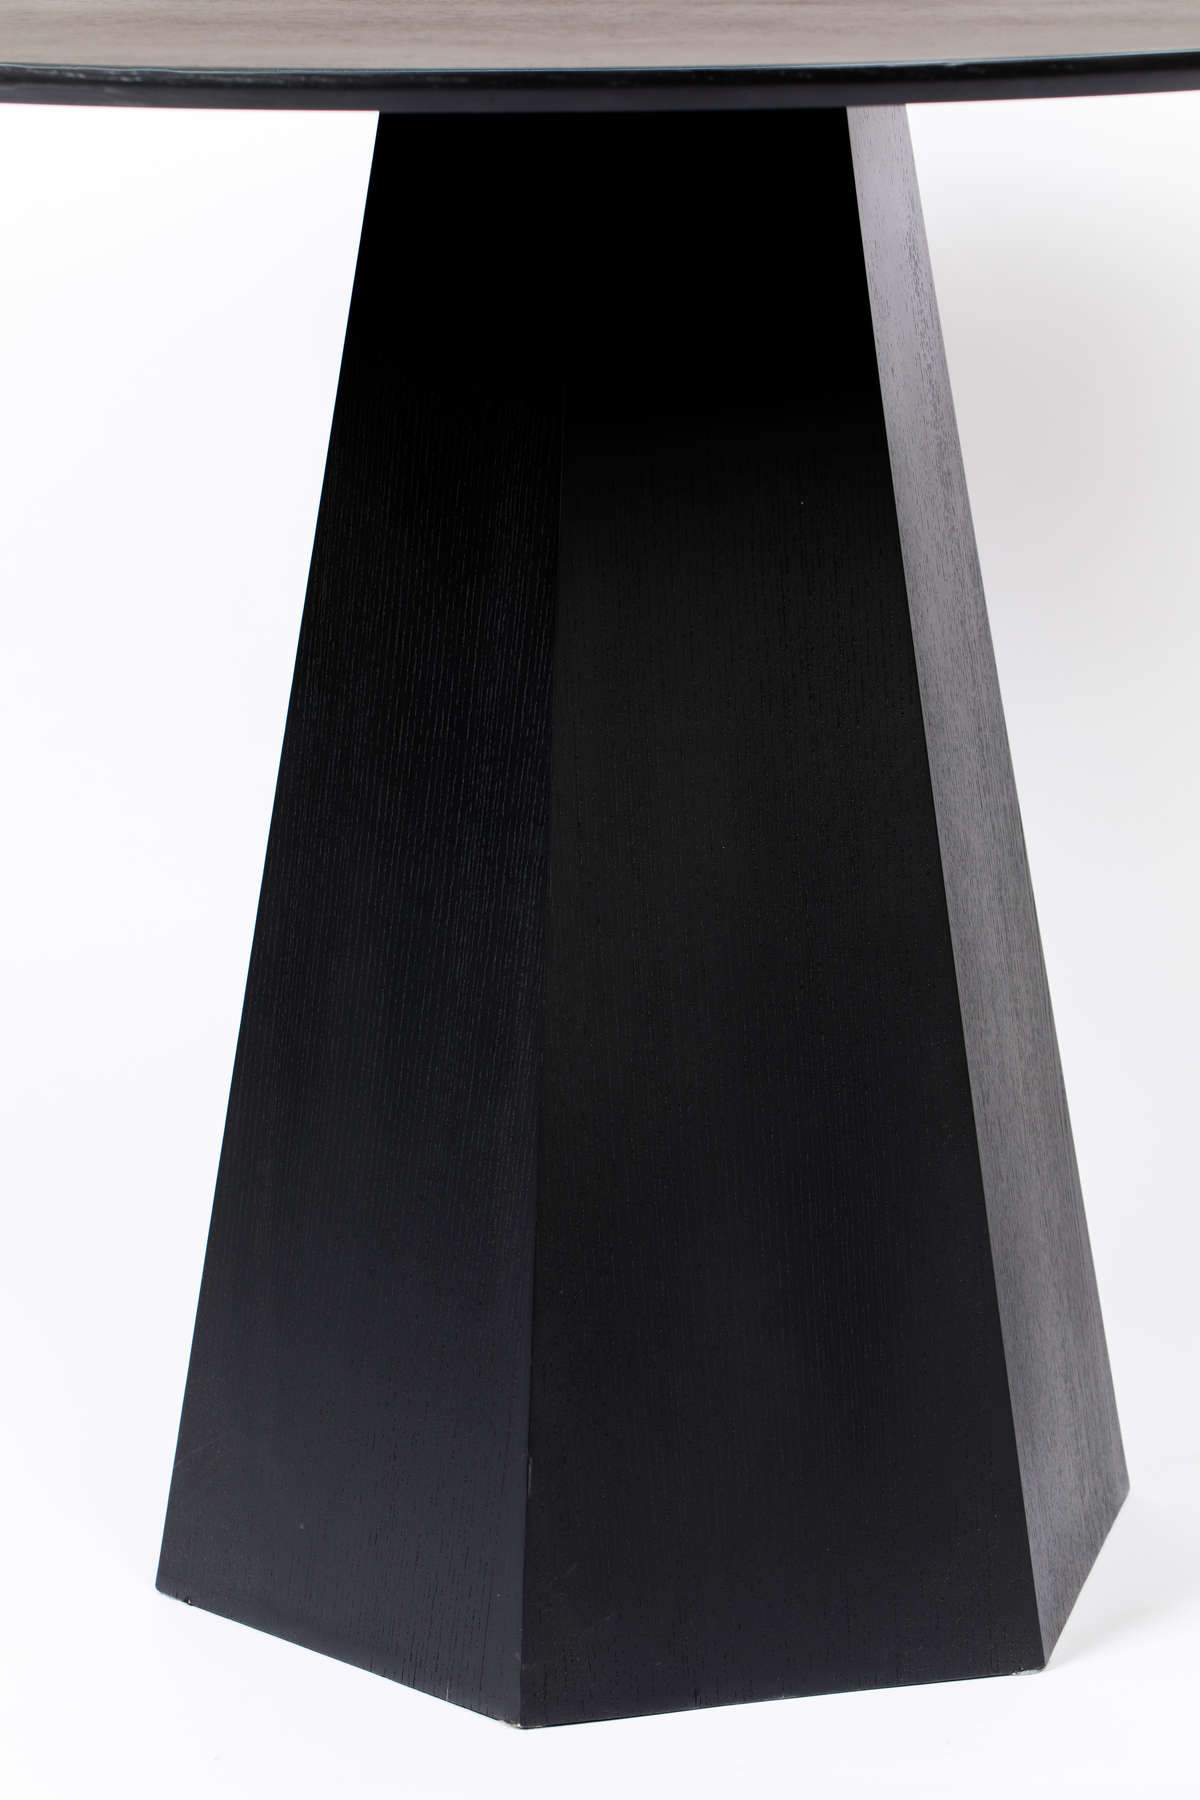 PILAR table black, Zuiver, Eye on Design